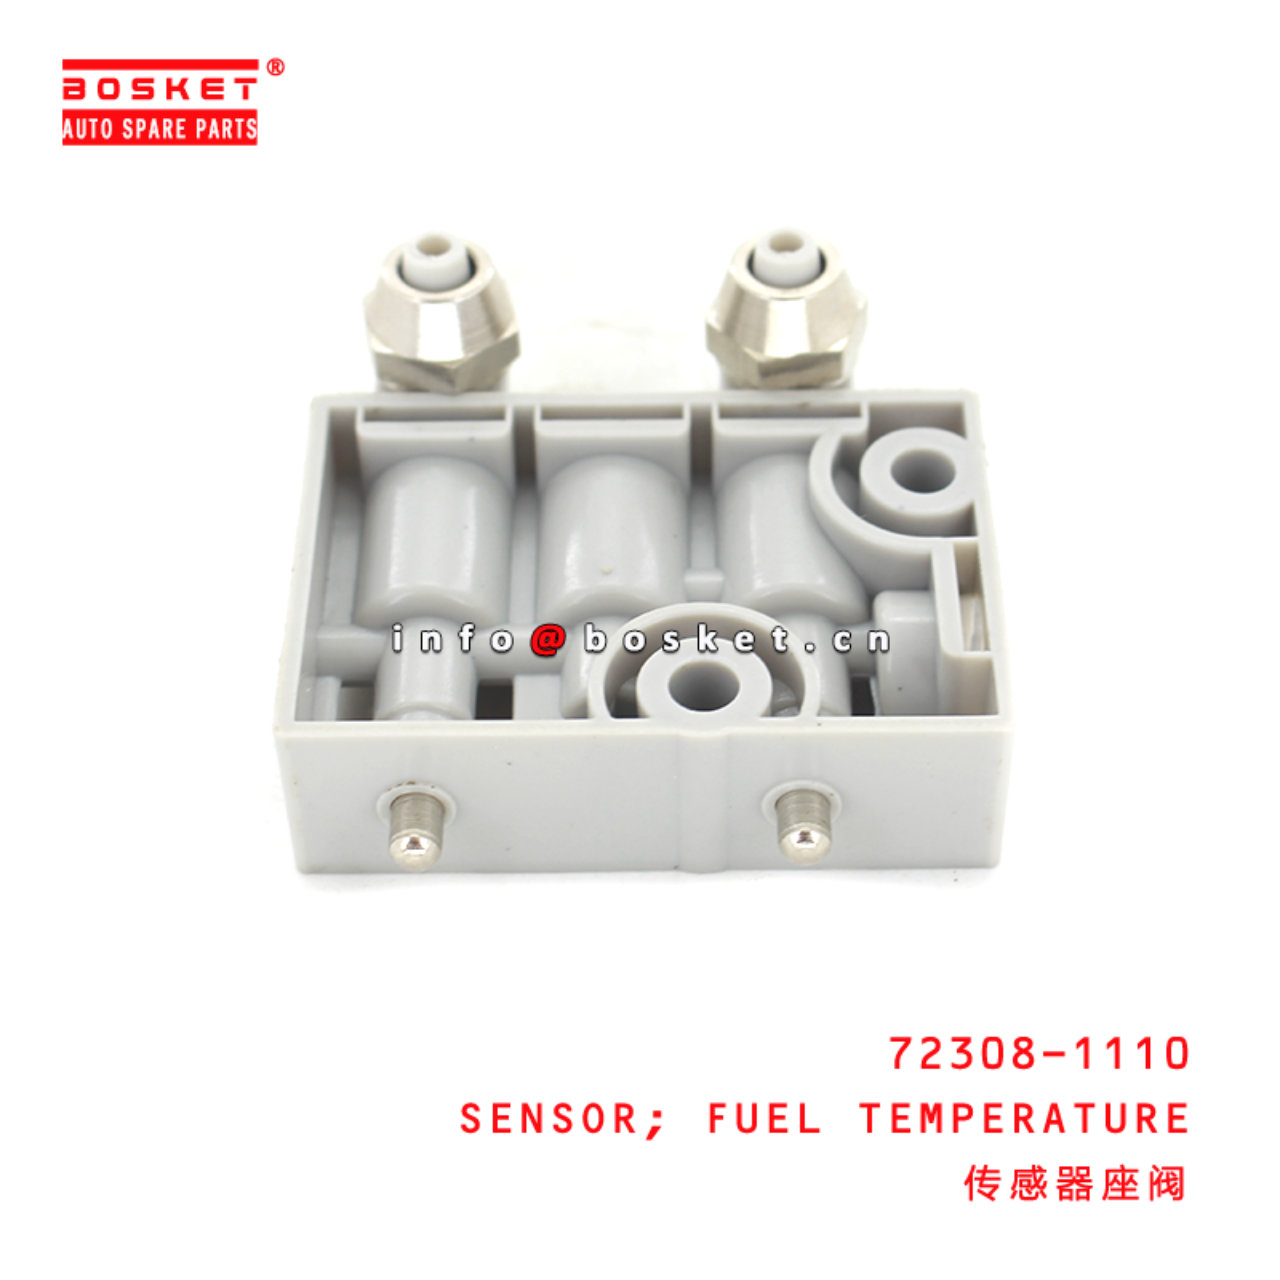 72308-1110 Fuel Temperature Sensor Suitable for ISUZU HINO